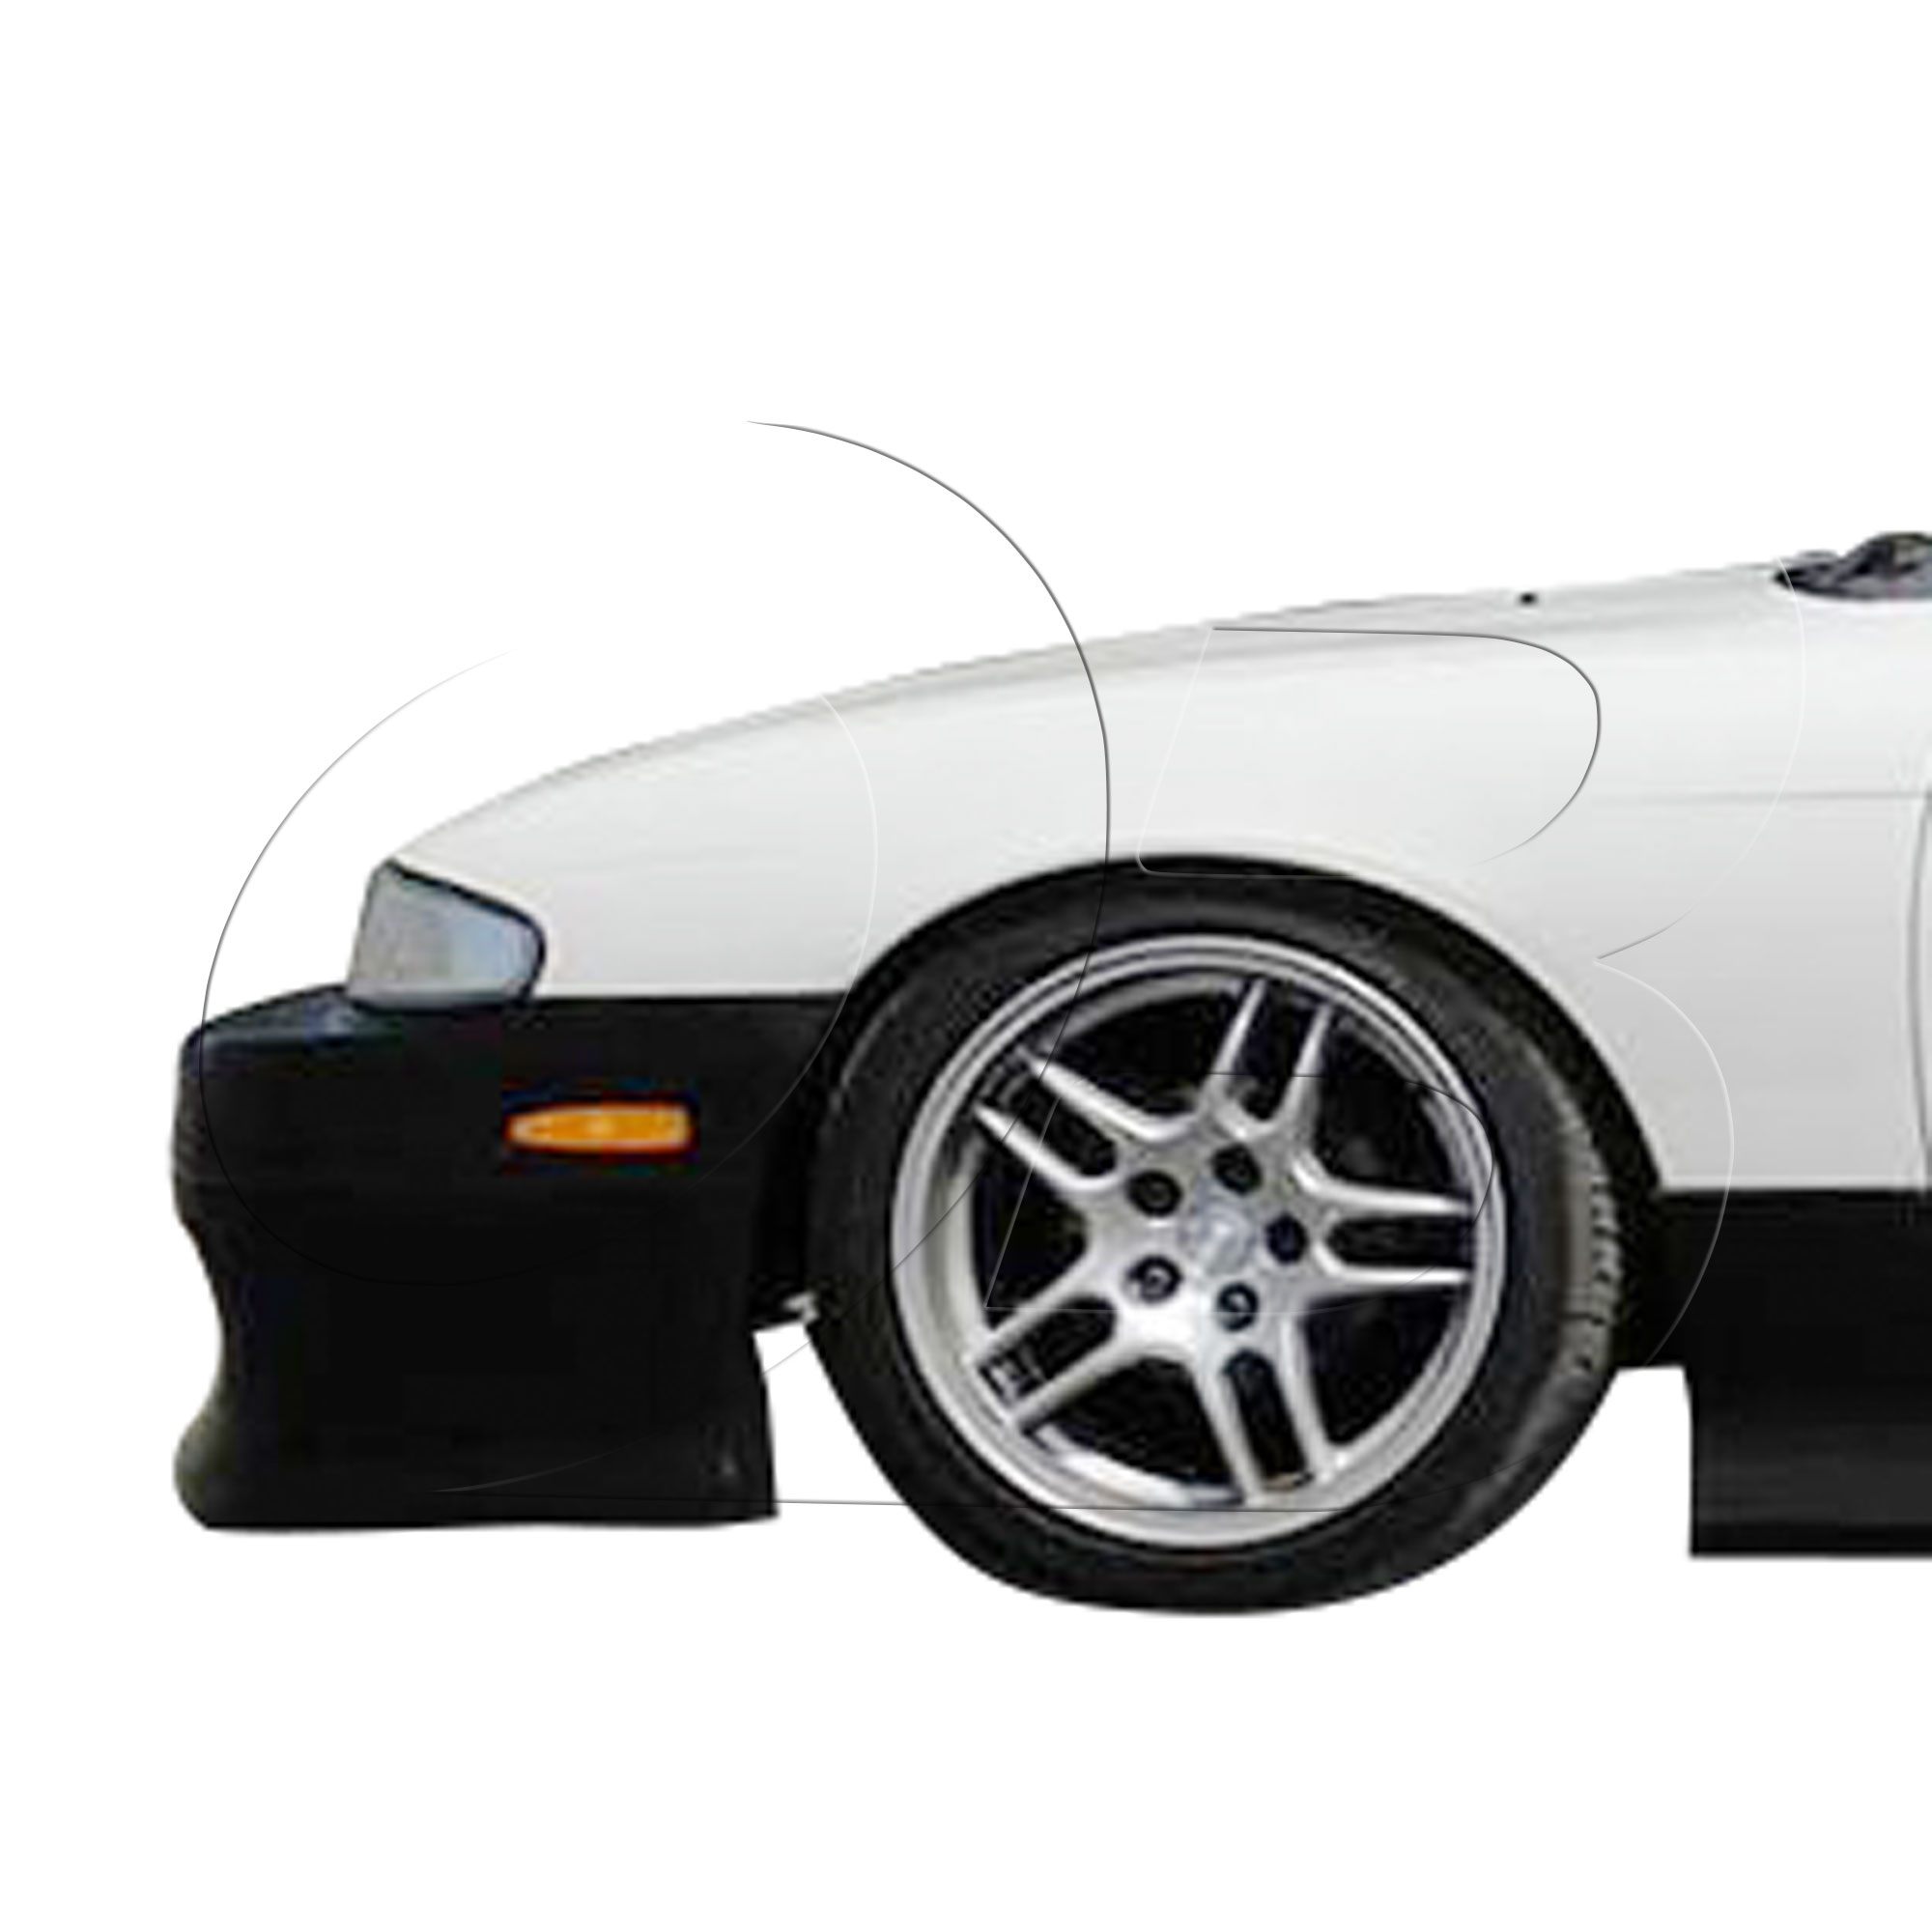 KBD Urethane DM3 Style 1pc Front Bumper > Nissan 240SX S14 1995-1996 - Image 29